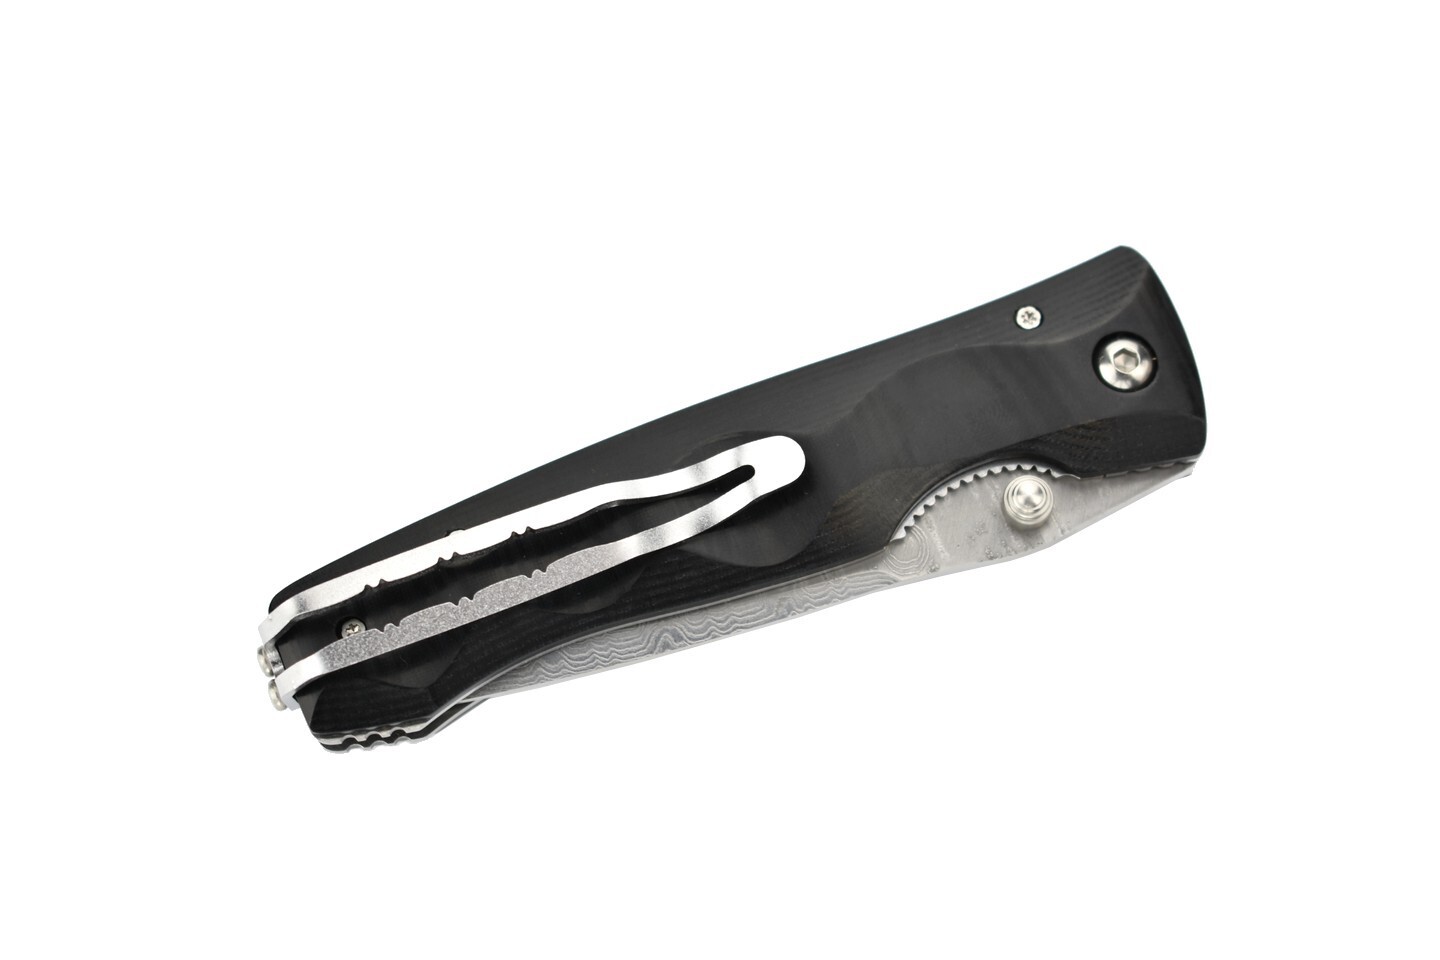 фото Складной нож mcusta elite mc-0121d, сталь vg-10, рукоять микарта